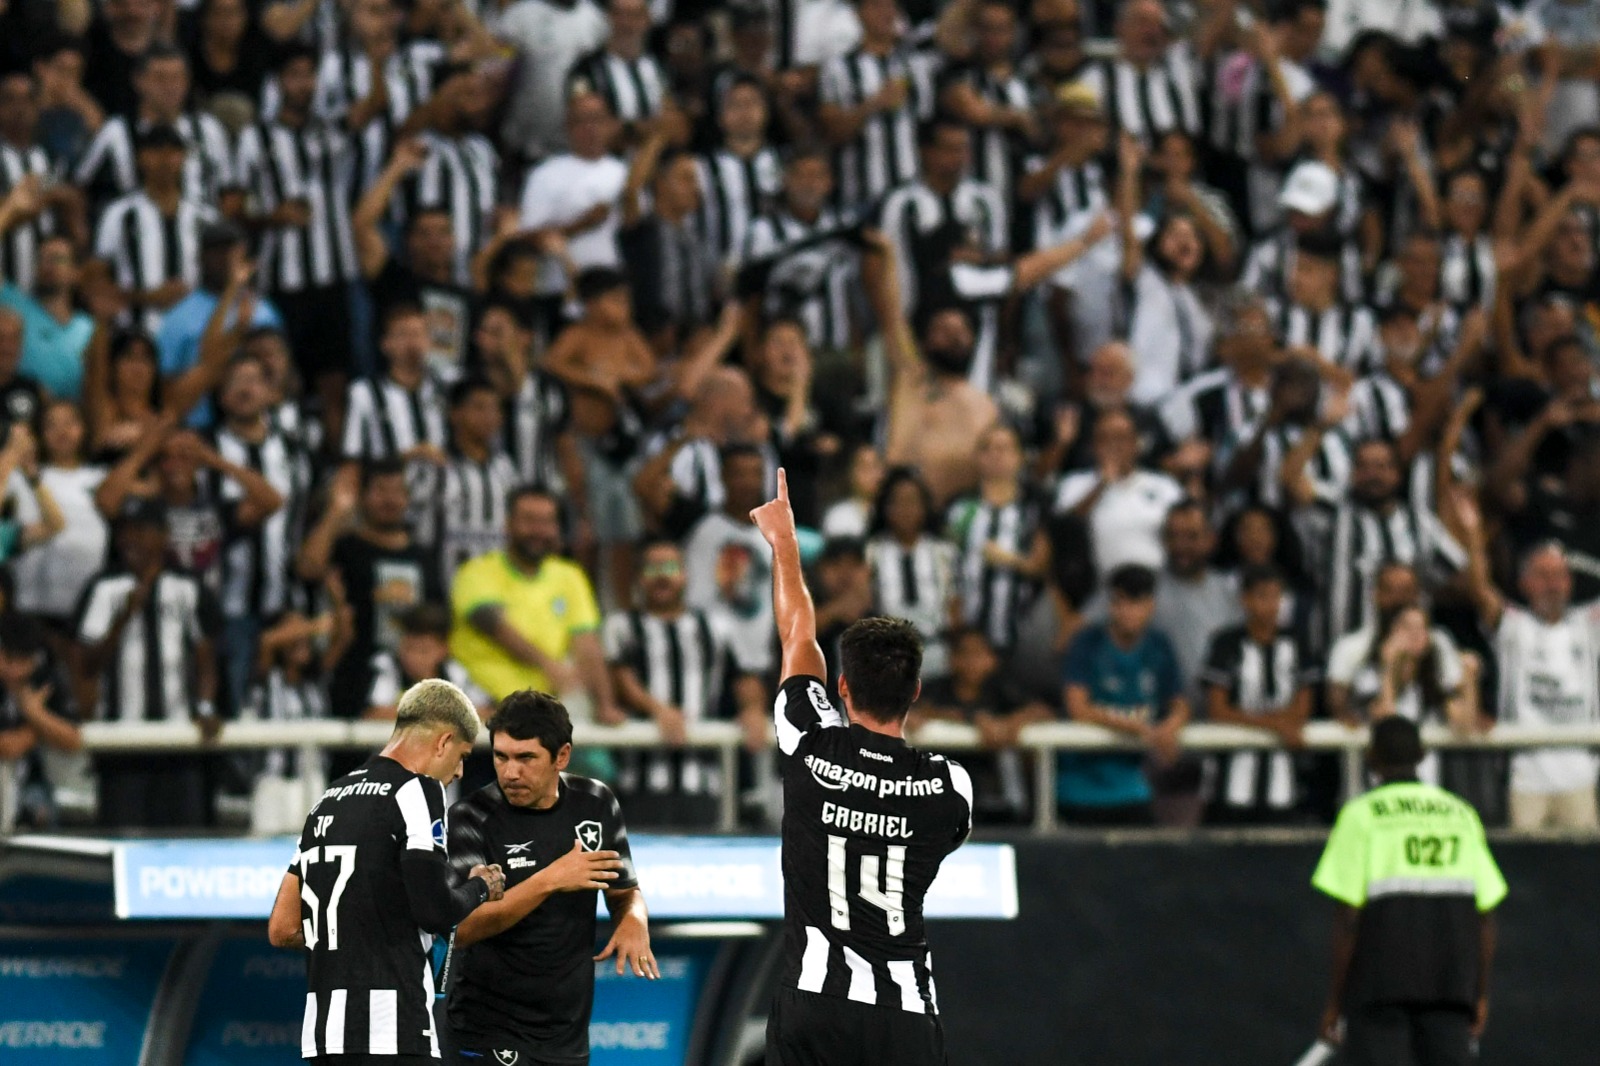 Análise: O que se pode tirar do empate do Botafogo com o Defensa y